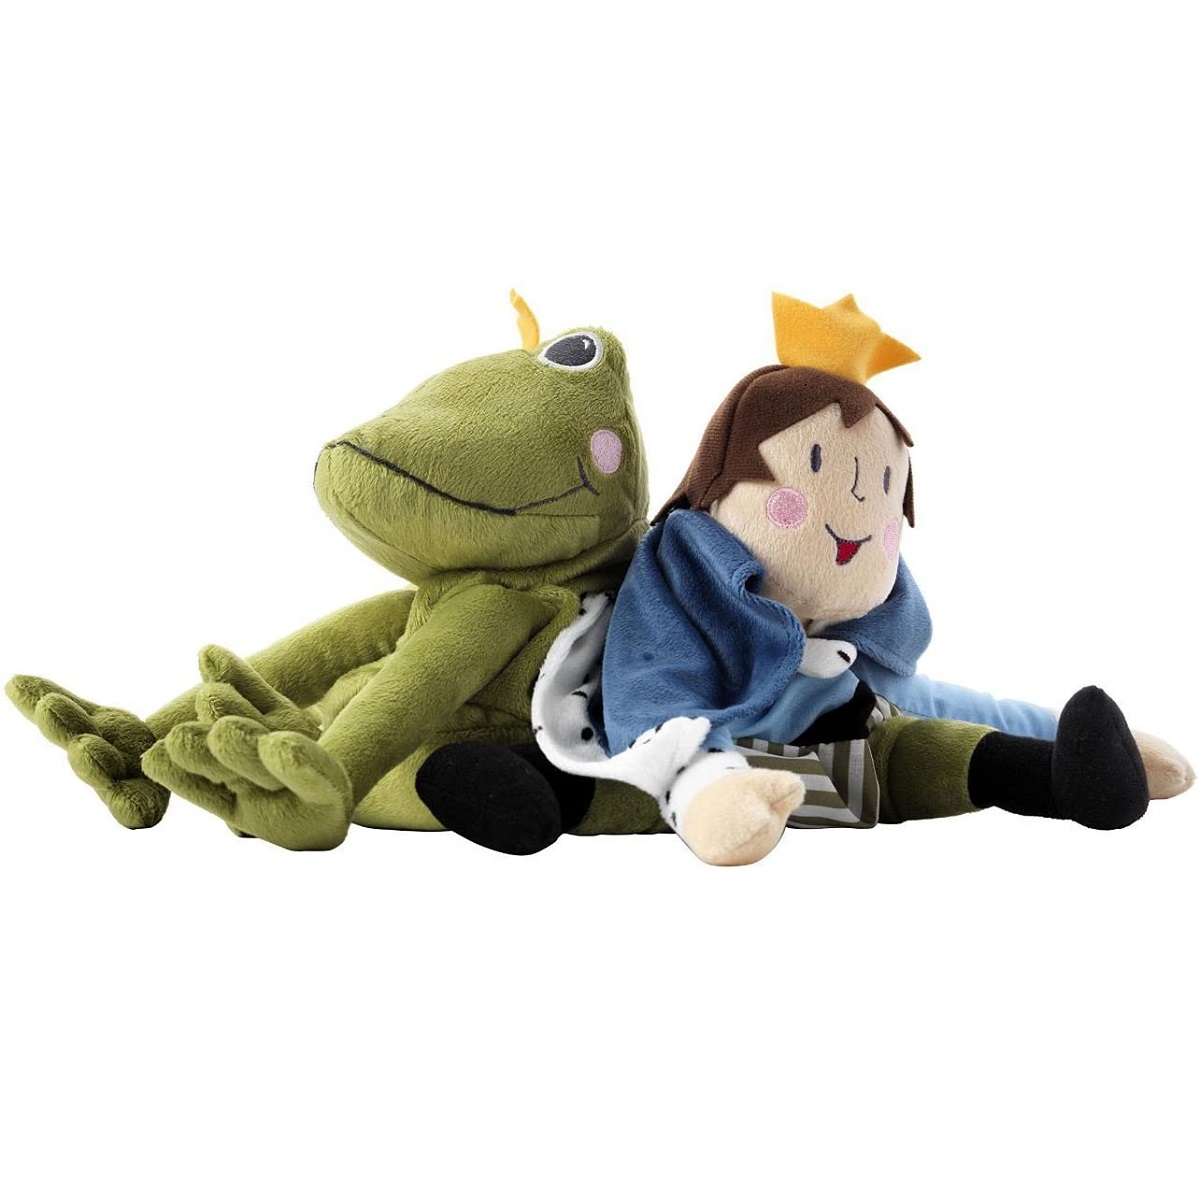 عروسک طرح شخصیت شاهزاده و قورباغه مدل The Frog Prince کد 617.8 ارتفاع 38 سانتی متر